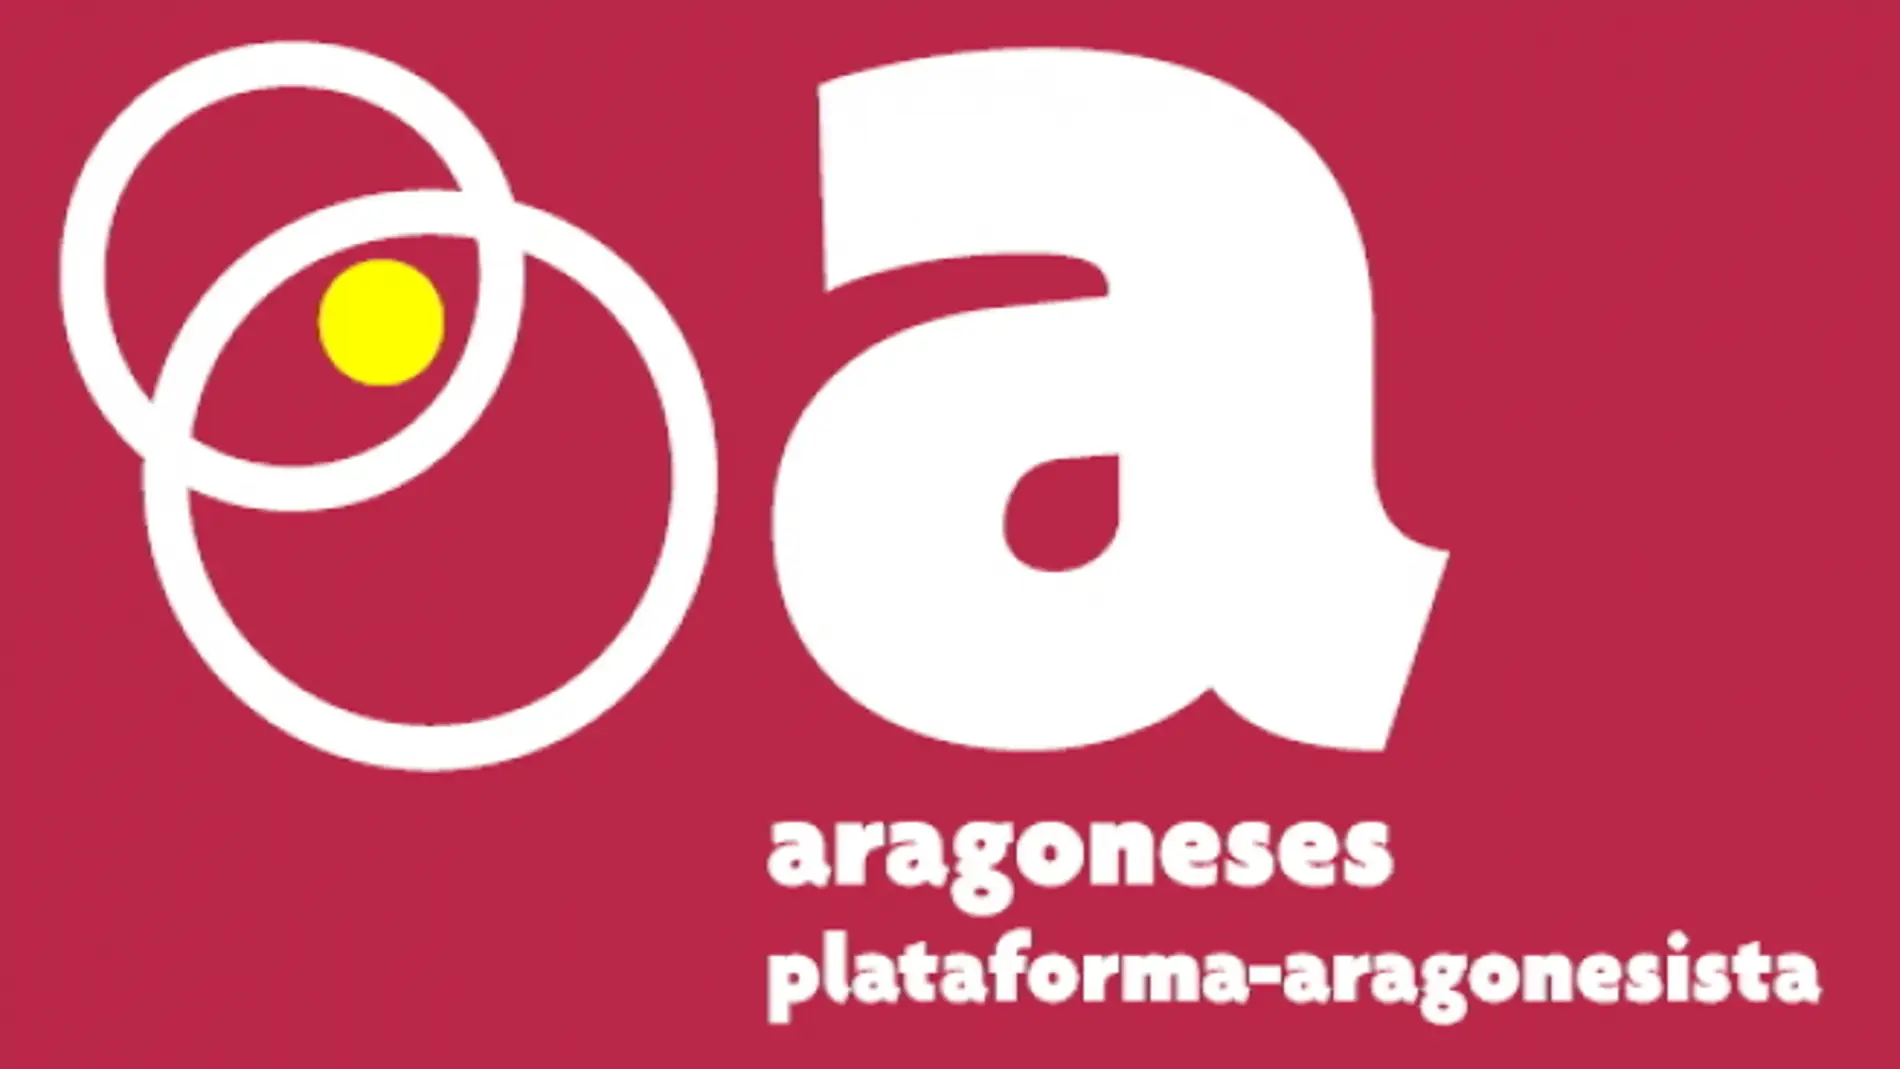 Logotipo del nuevo partido "Aragoneses- Plataforma Aragonesista"